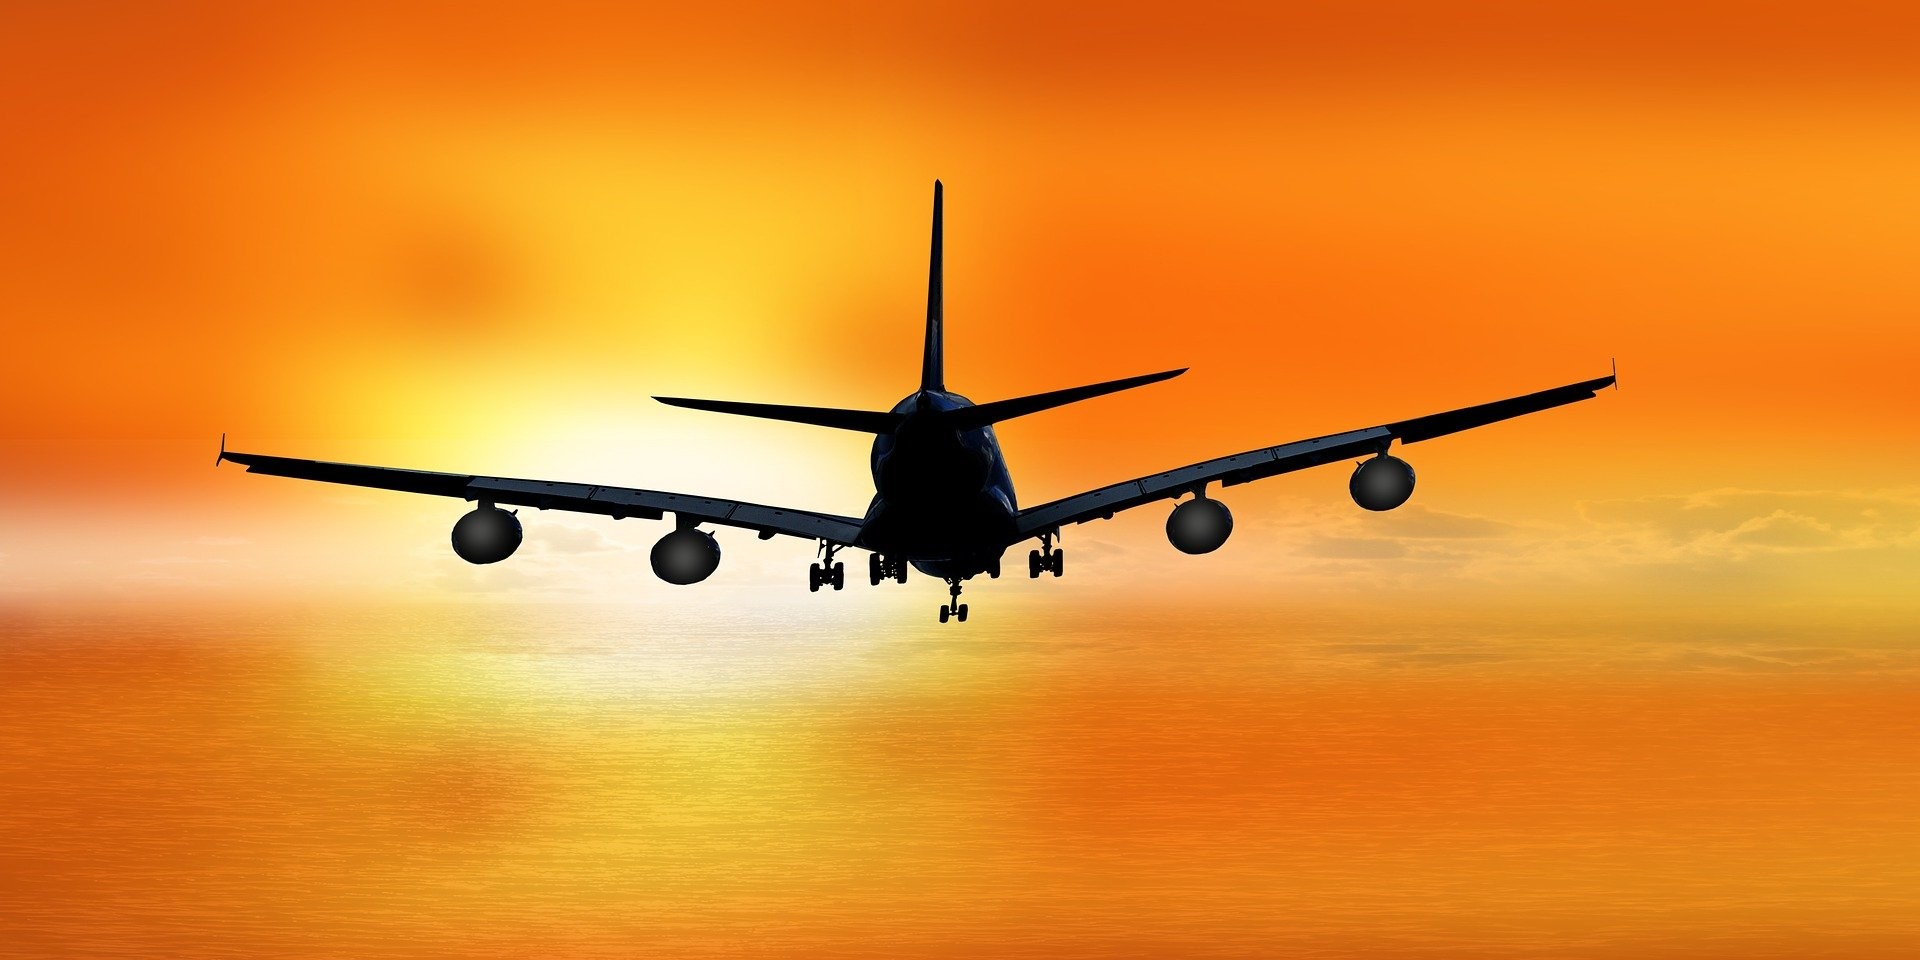 HANetf U.S. Global Jets UCITS ETF (JETS ETF) är Europas första globala flygindustri -ETF som ger tillgång till kommersiella flygbolag, flygplanstillverkning och flygplats- och terminaltjänster. HANetf U.S. Global Jets UCITS ETF investerar i aktier i flygbolag från hela världen. Utdelningen i fonden återinvesteras (ackumuleras).